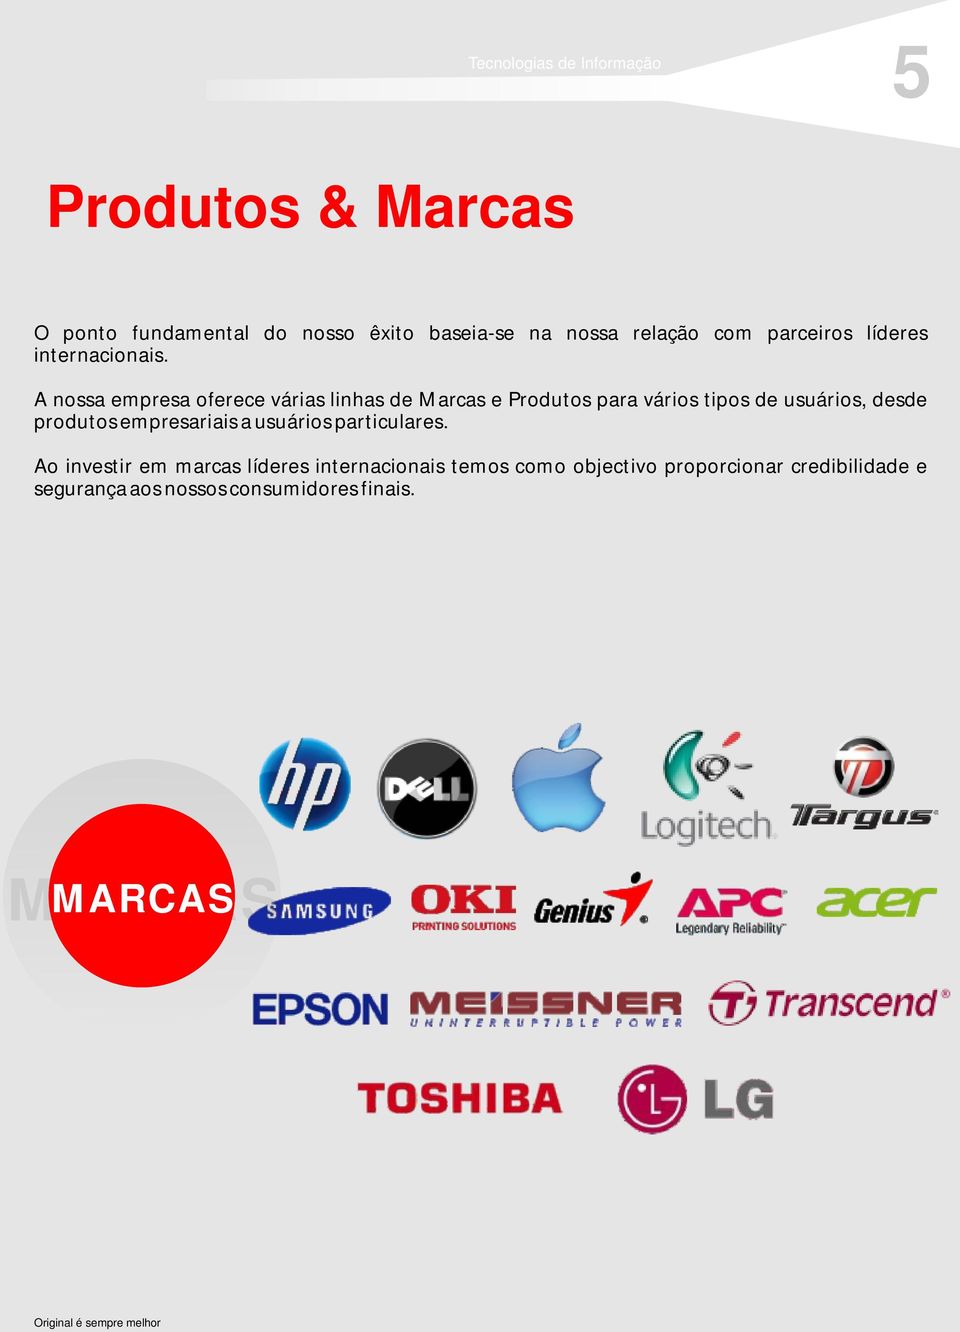 A nossa empresa oferece várias linhas de Marcas e Produtos para vários tipos de usuários, desde